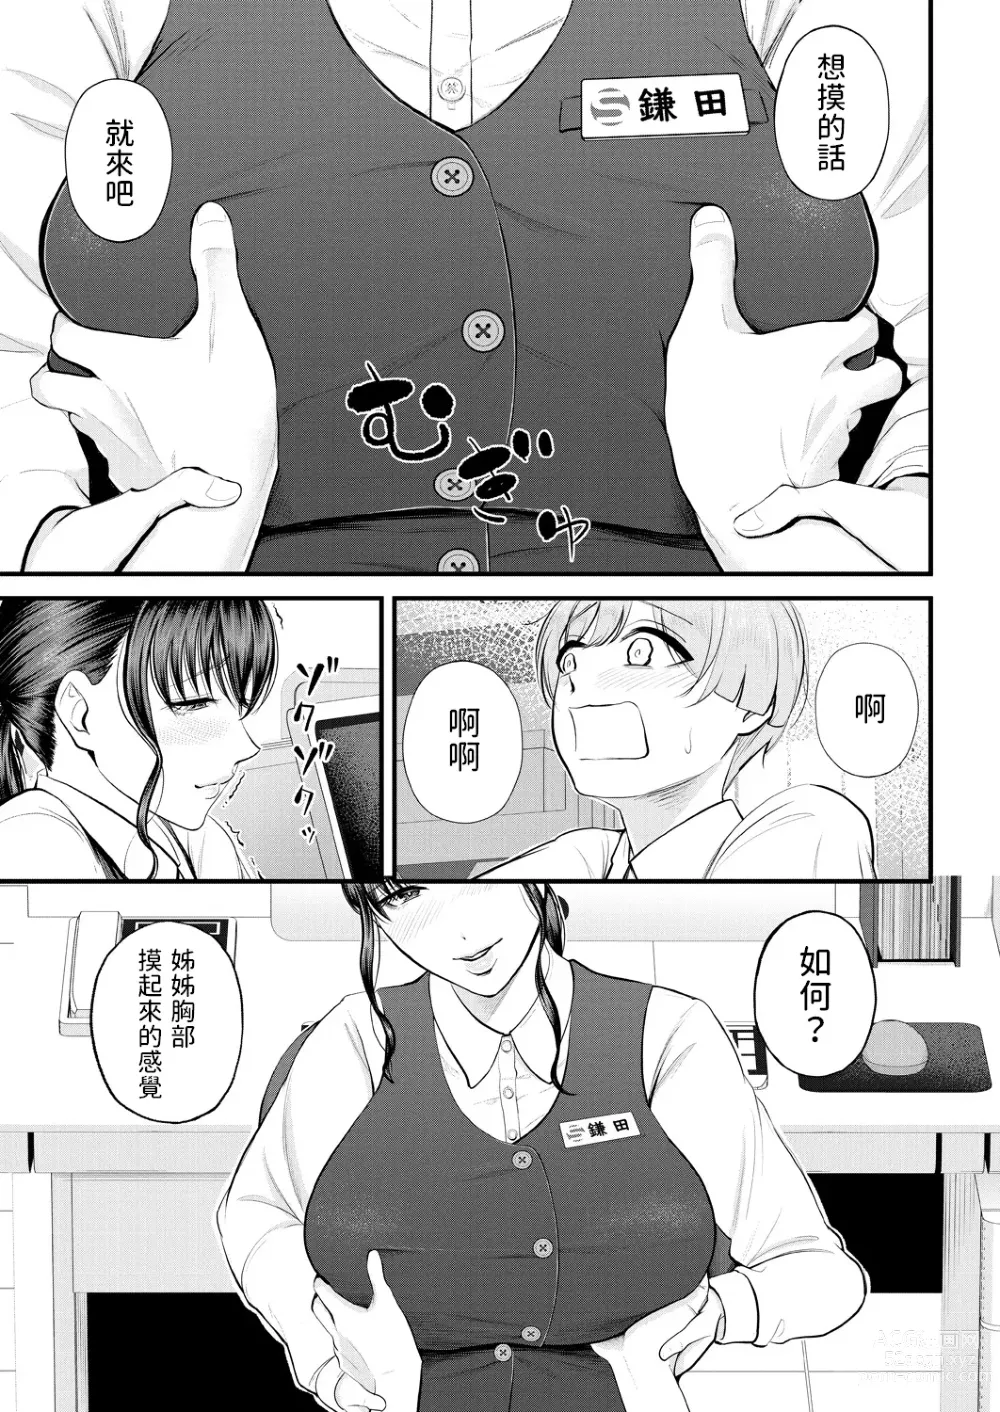 Page 17 of manga Naisho no Shokuba Taiken